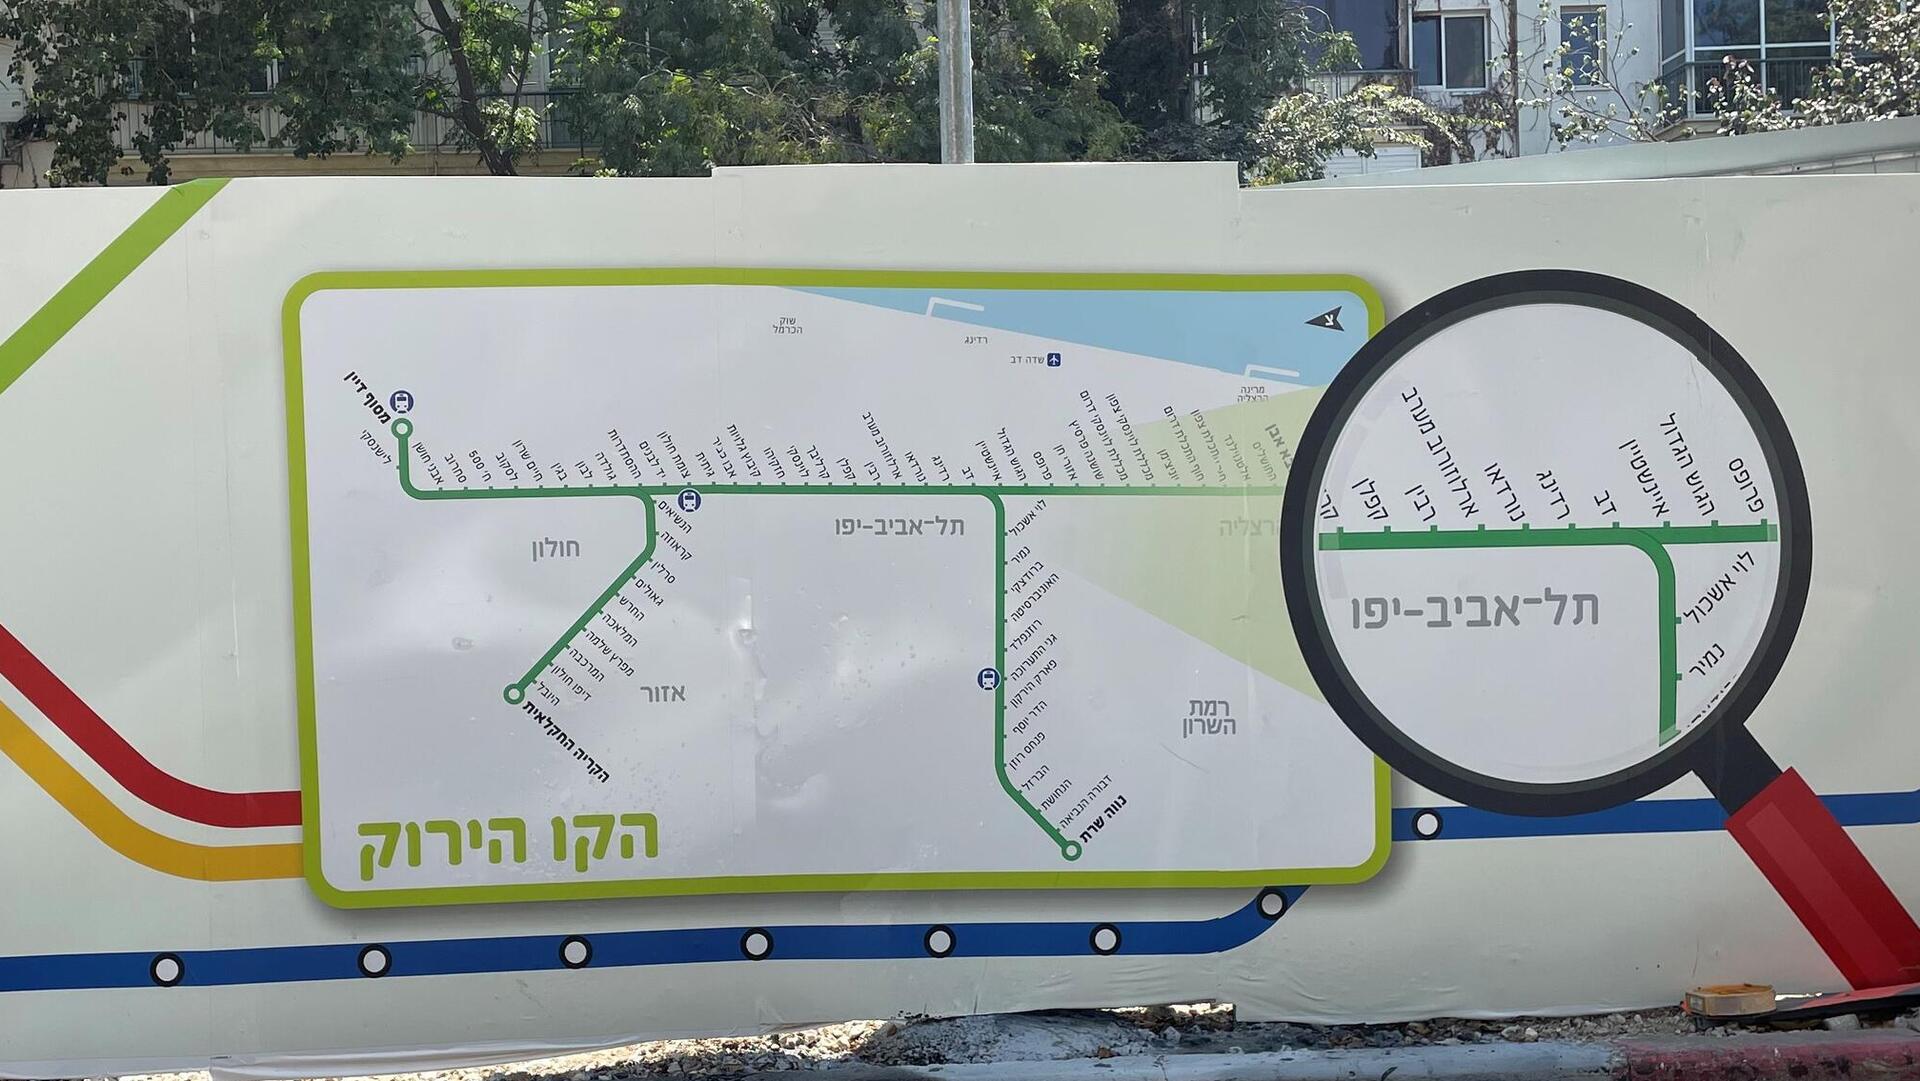 רכבת קלה הרכבת הקלה הקו הירוק תל אביב נת"ע